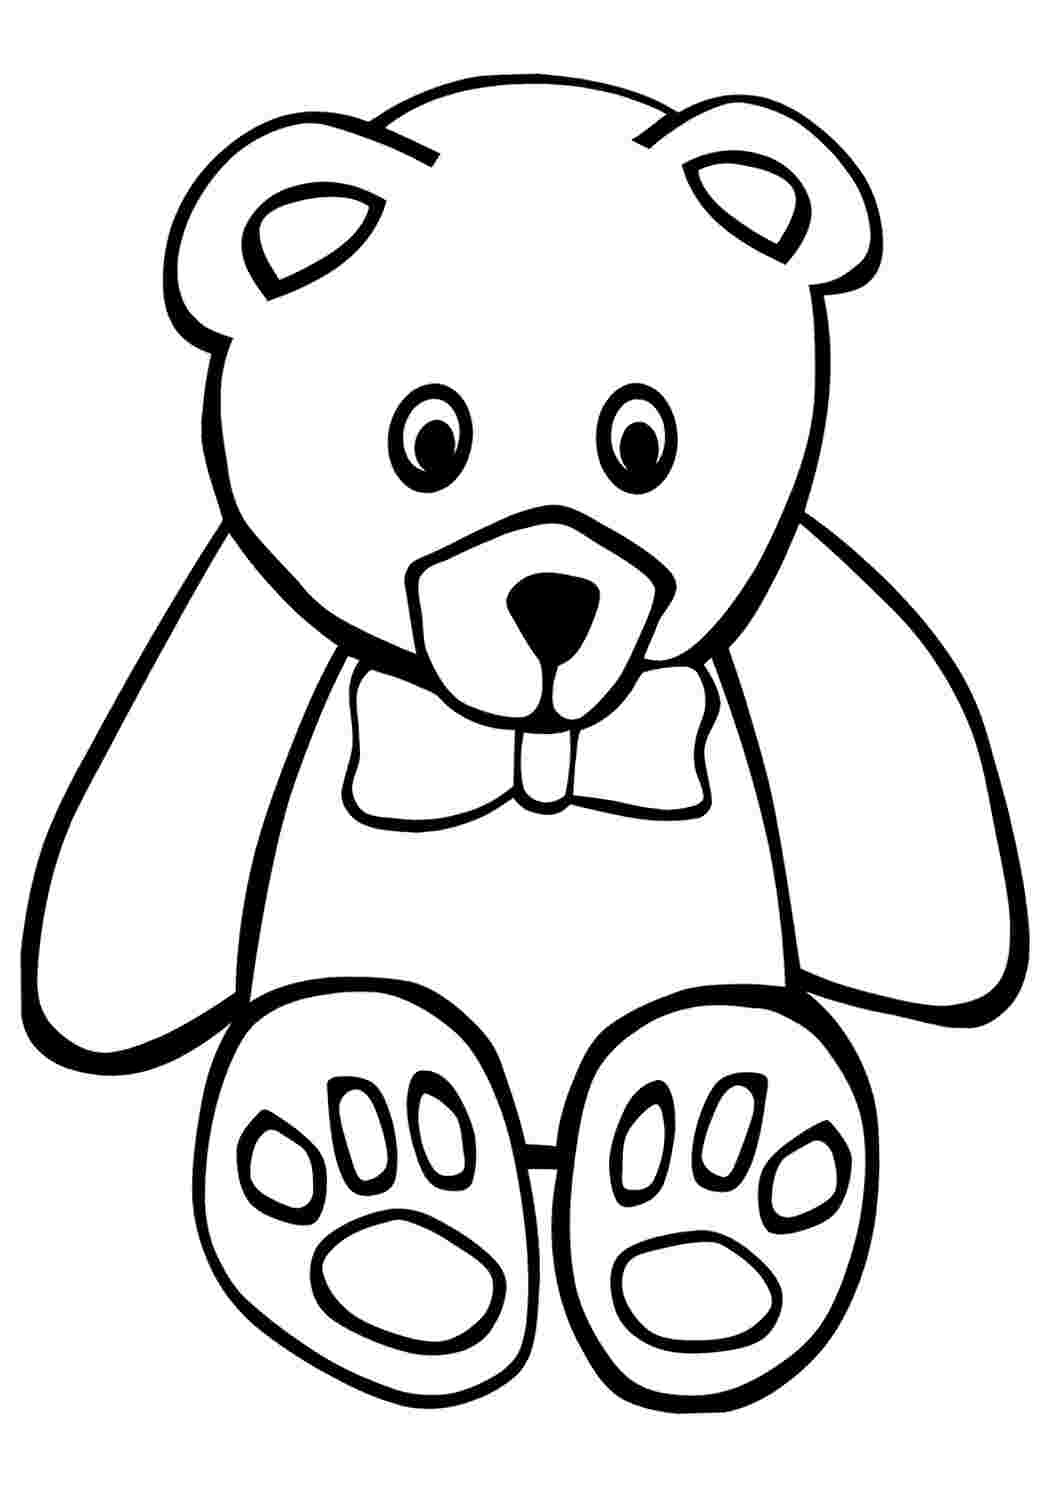 Распечатка медведя. Раскраска. Медвежонок. Раскраска "мишки". Медвежонок раскраска для детей. Медведь раскраска для детей.